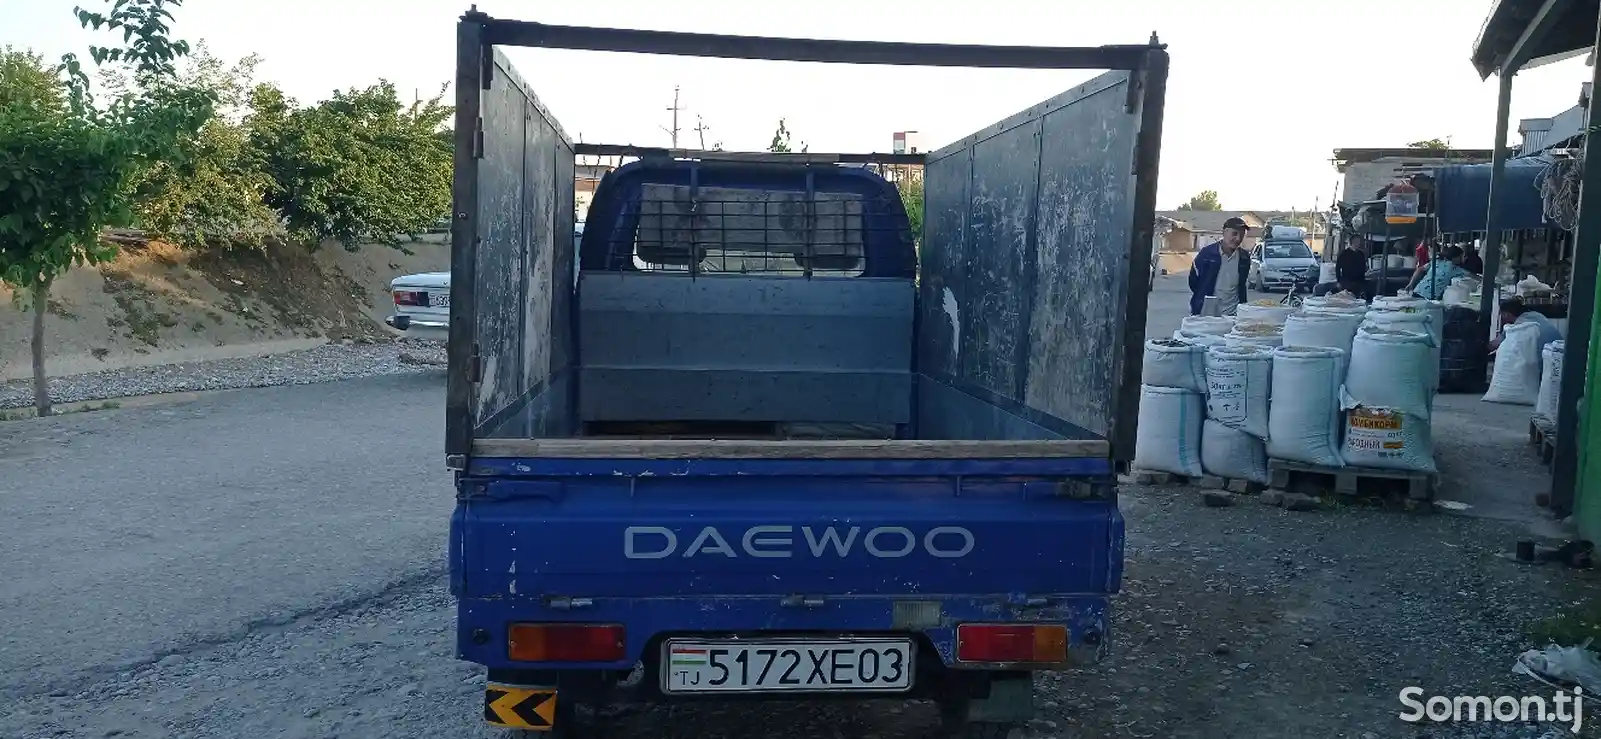 Бортовой автомобиль Daewoo Labo-5